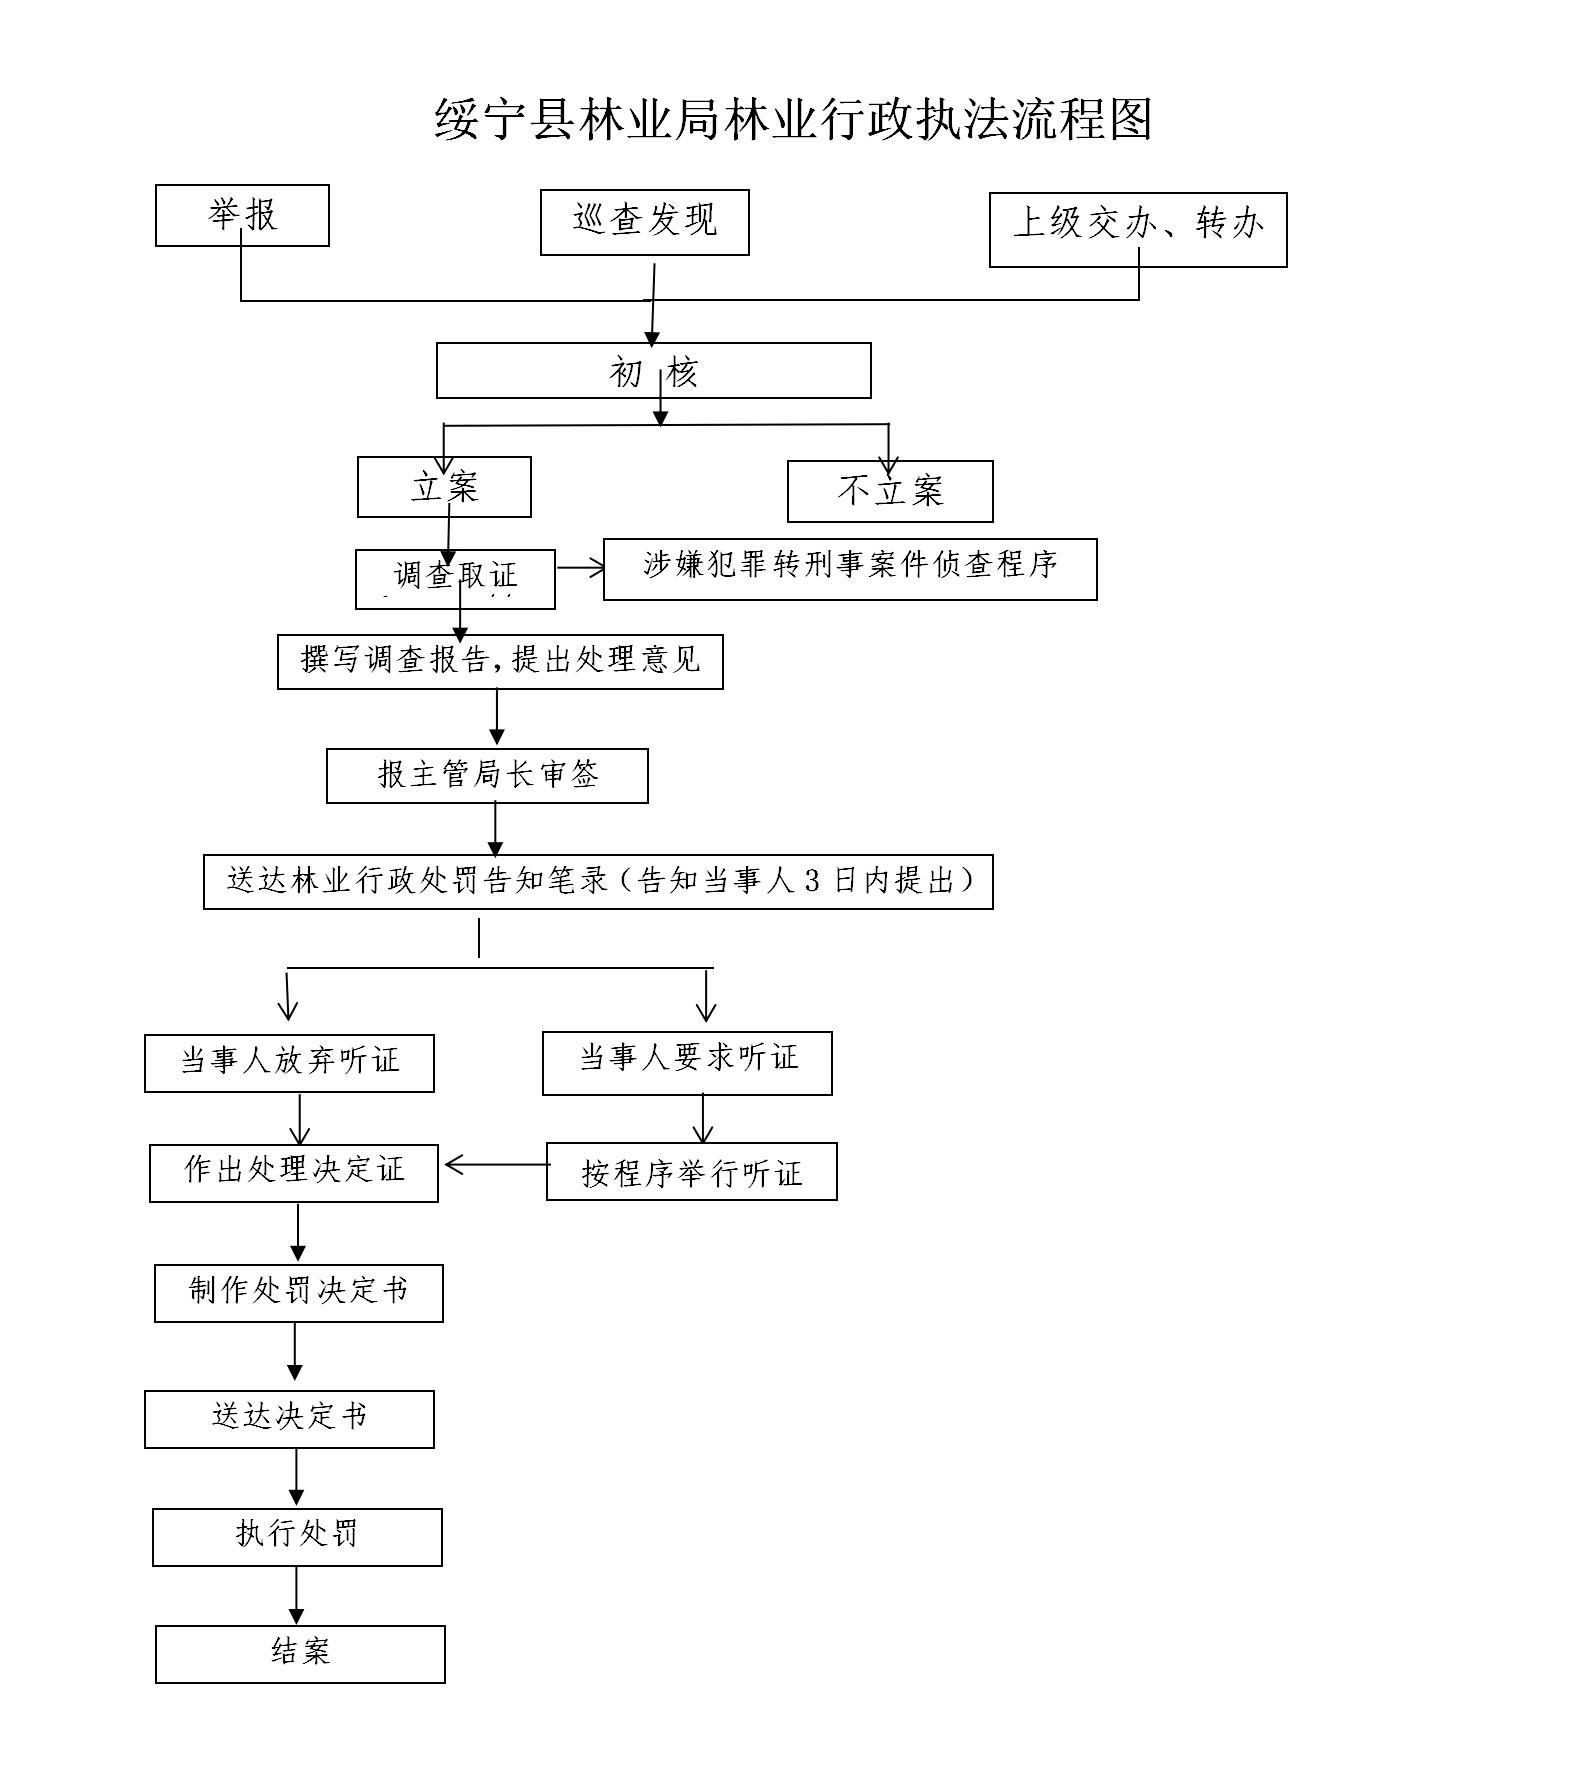 绥宁县林业局行政执法主体、权限、依据、程序、救济渠道等信息公示(图1)